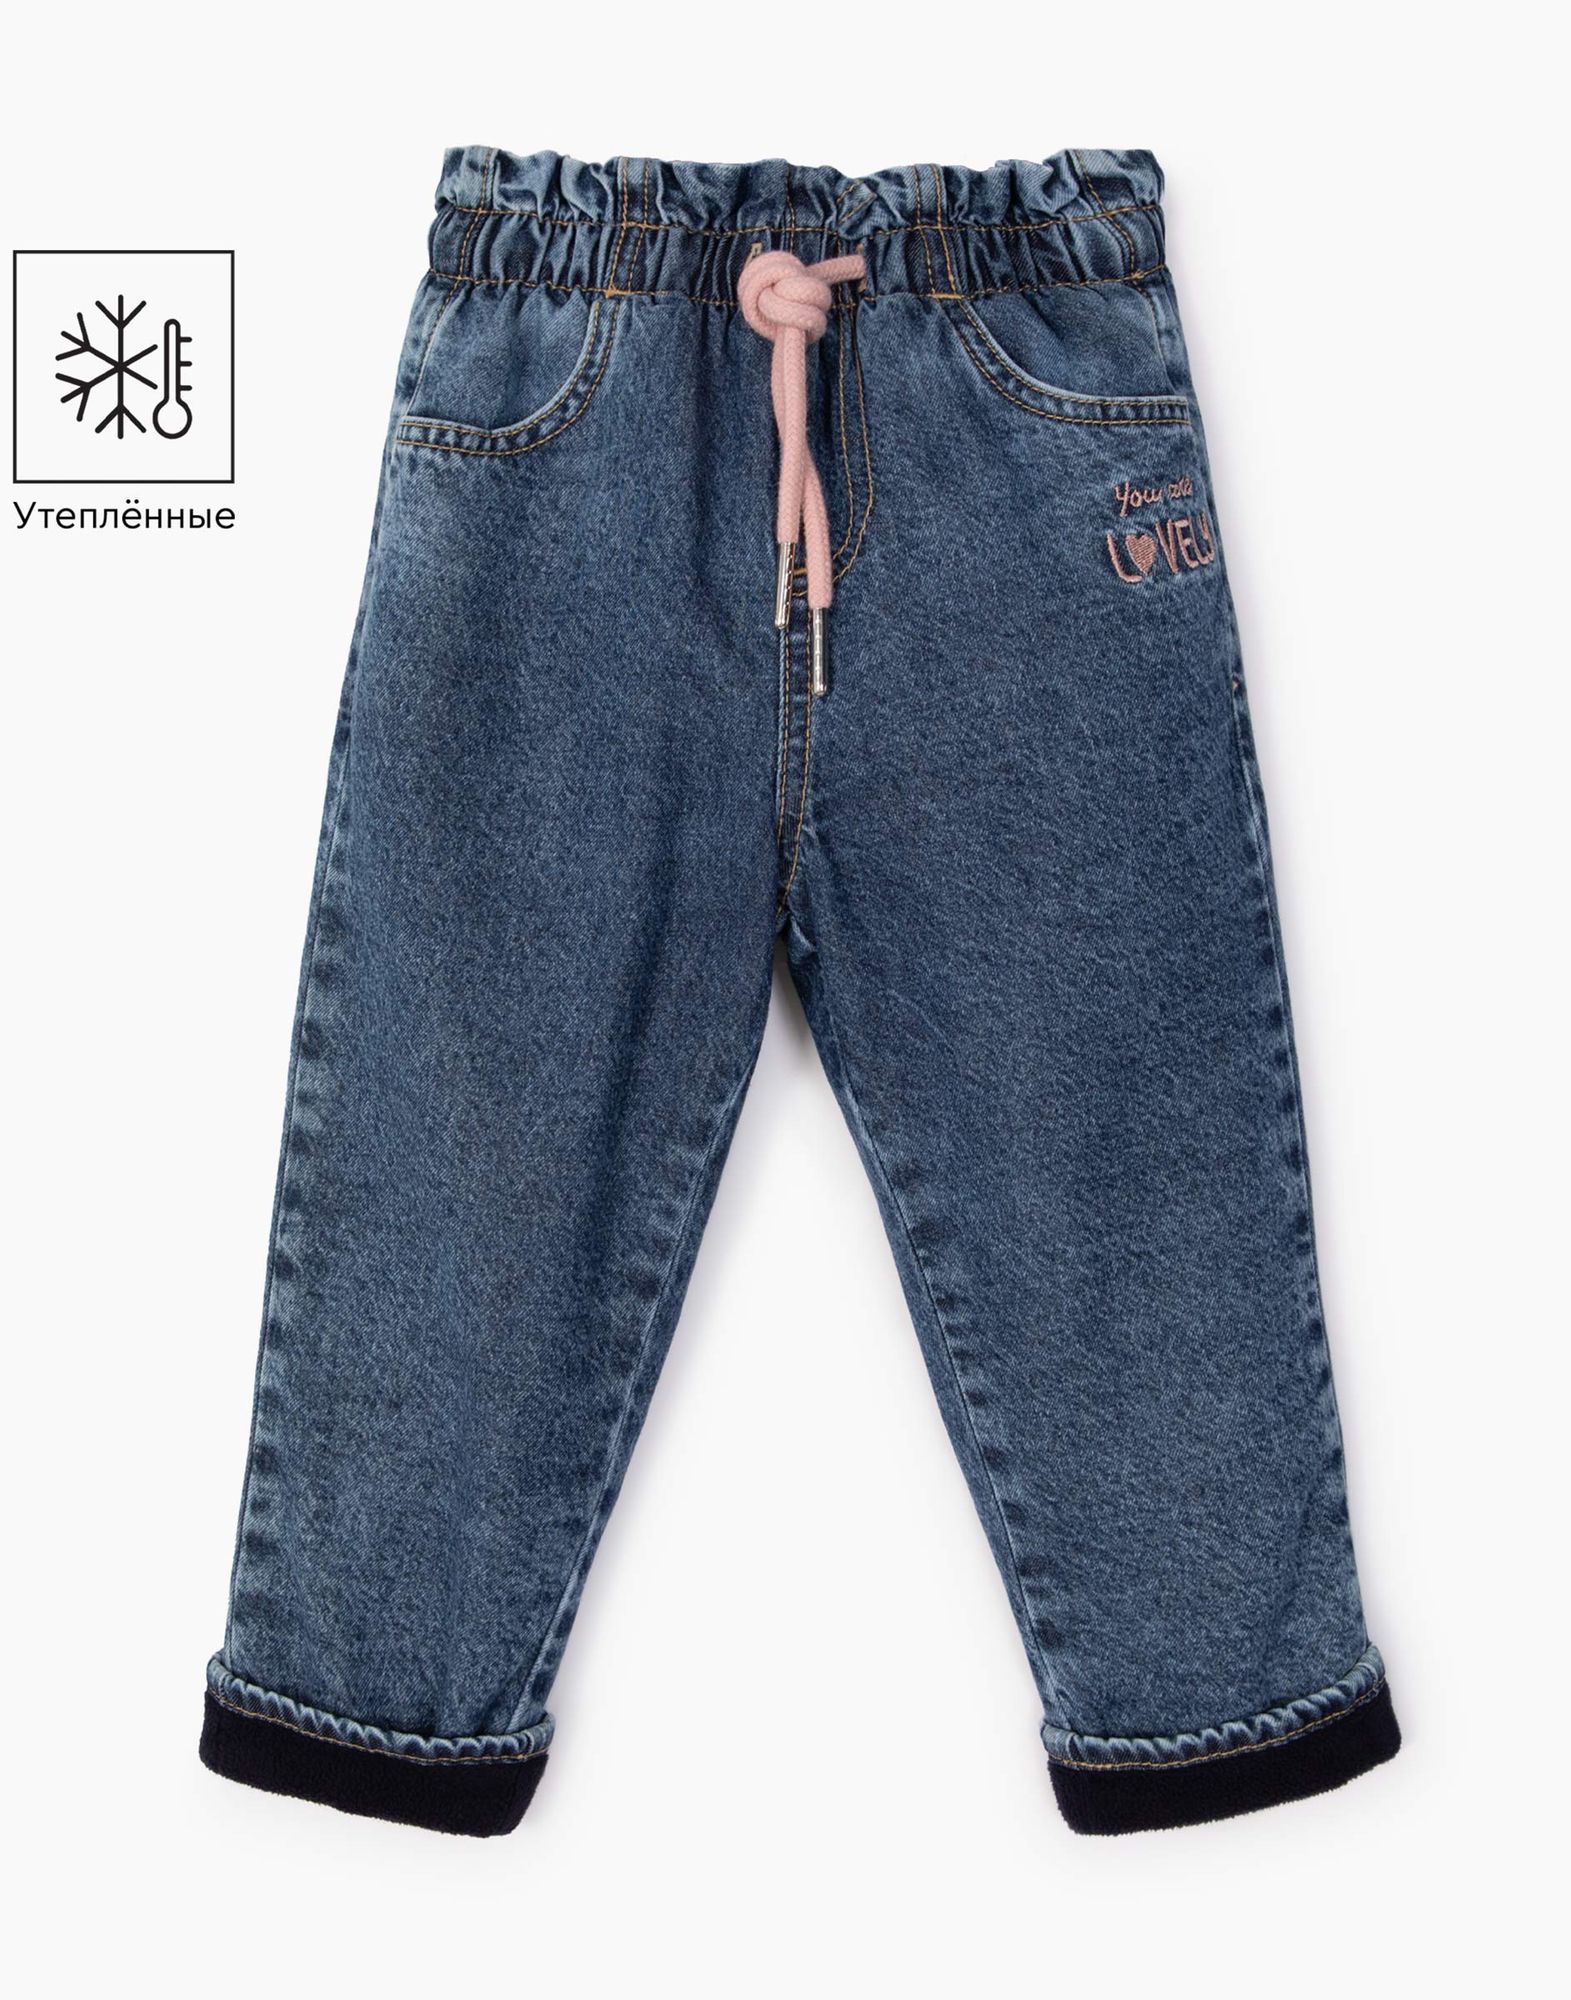 Утеплённые джинсы Paperbag с вышивкой для девочки-0